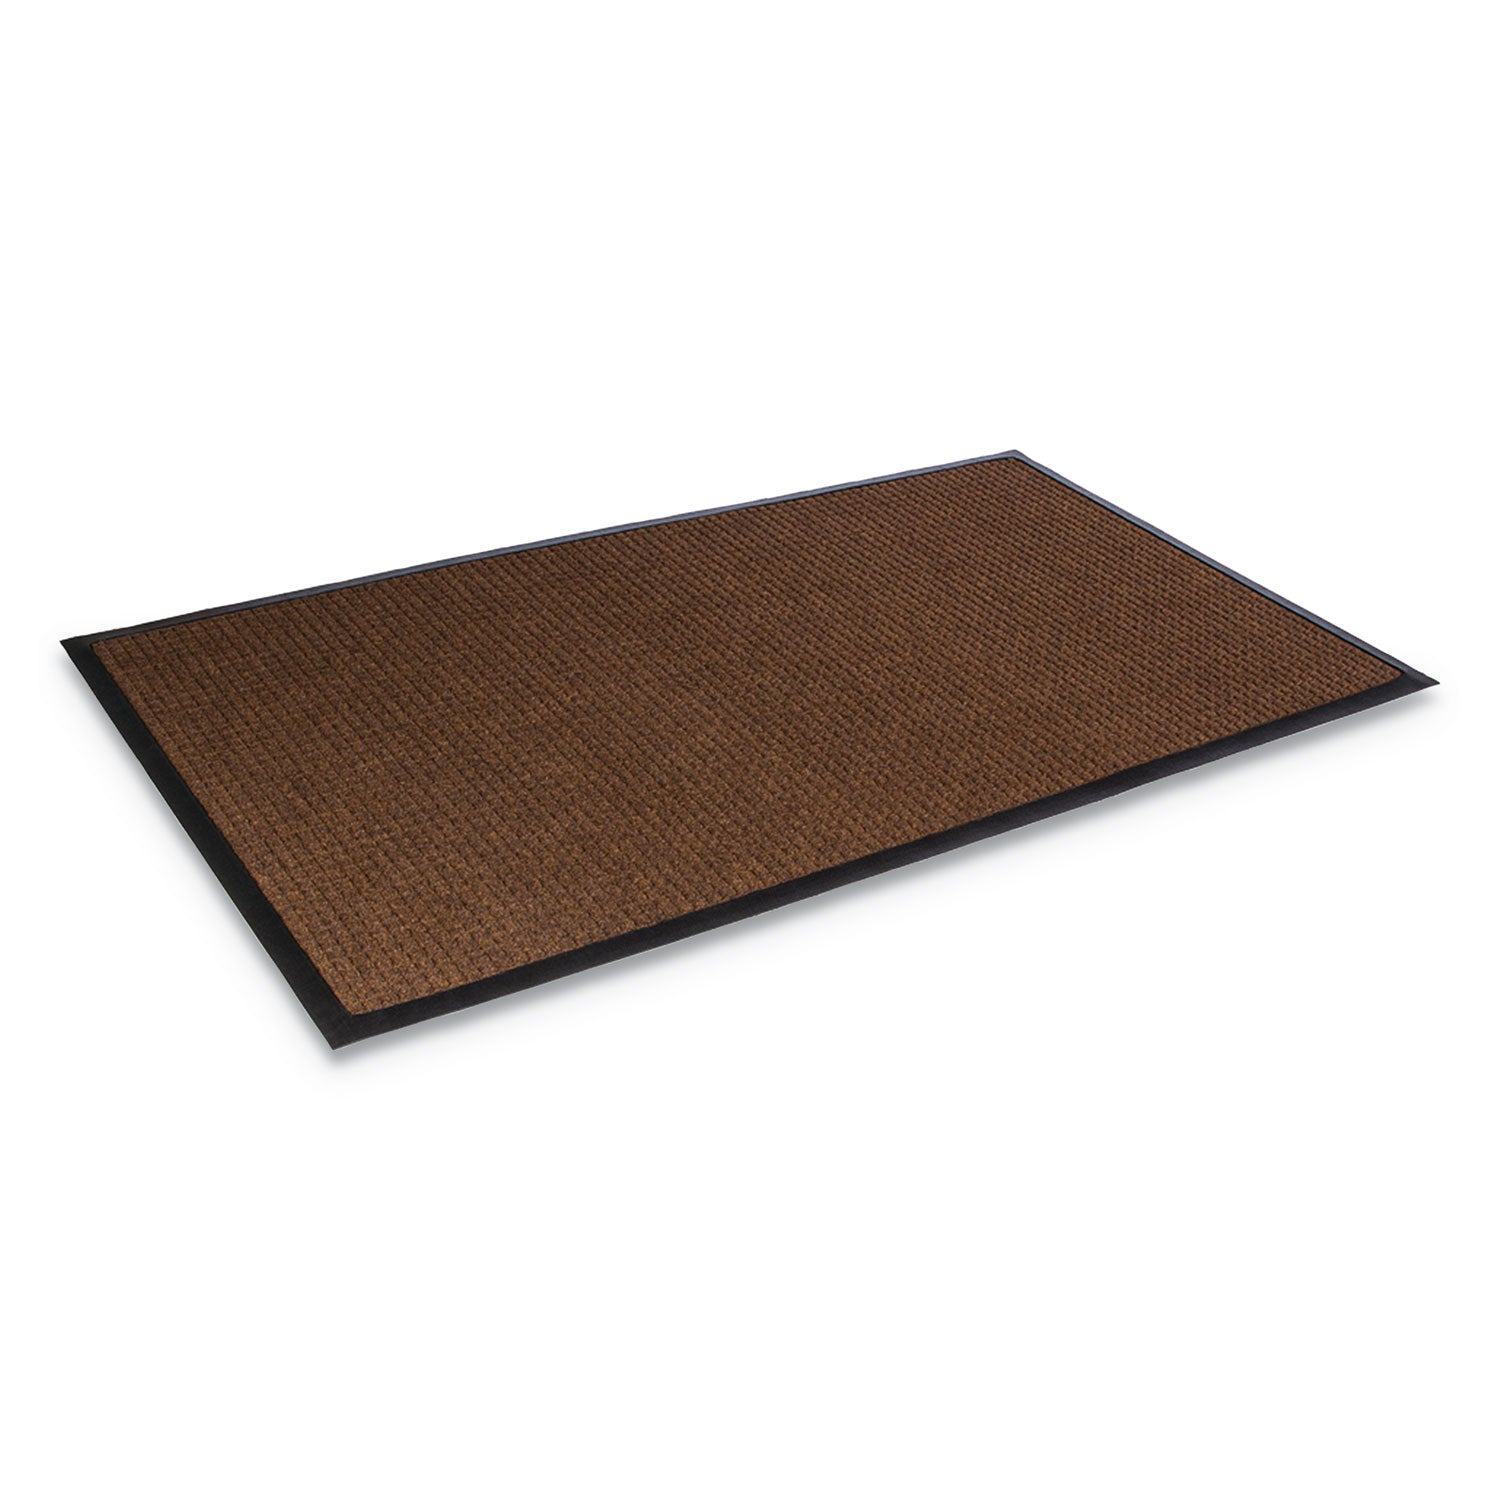 Super-Soaker Wiper Mat with Gripper Bottom, Polypropylene, 36 x 120, Dark Brown - 